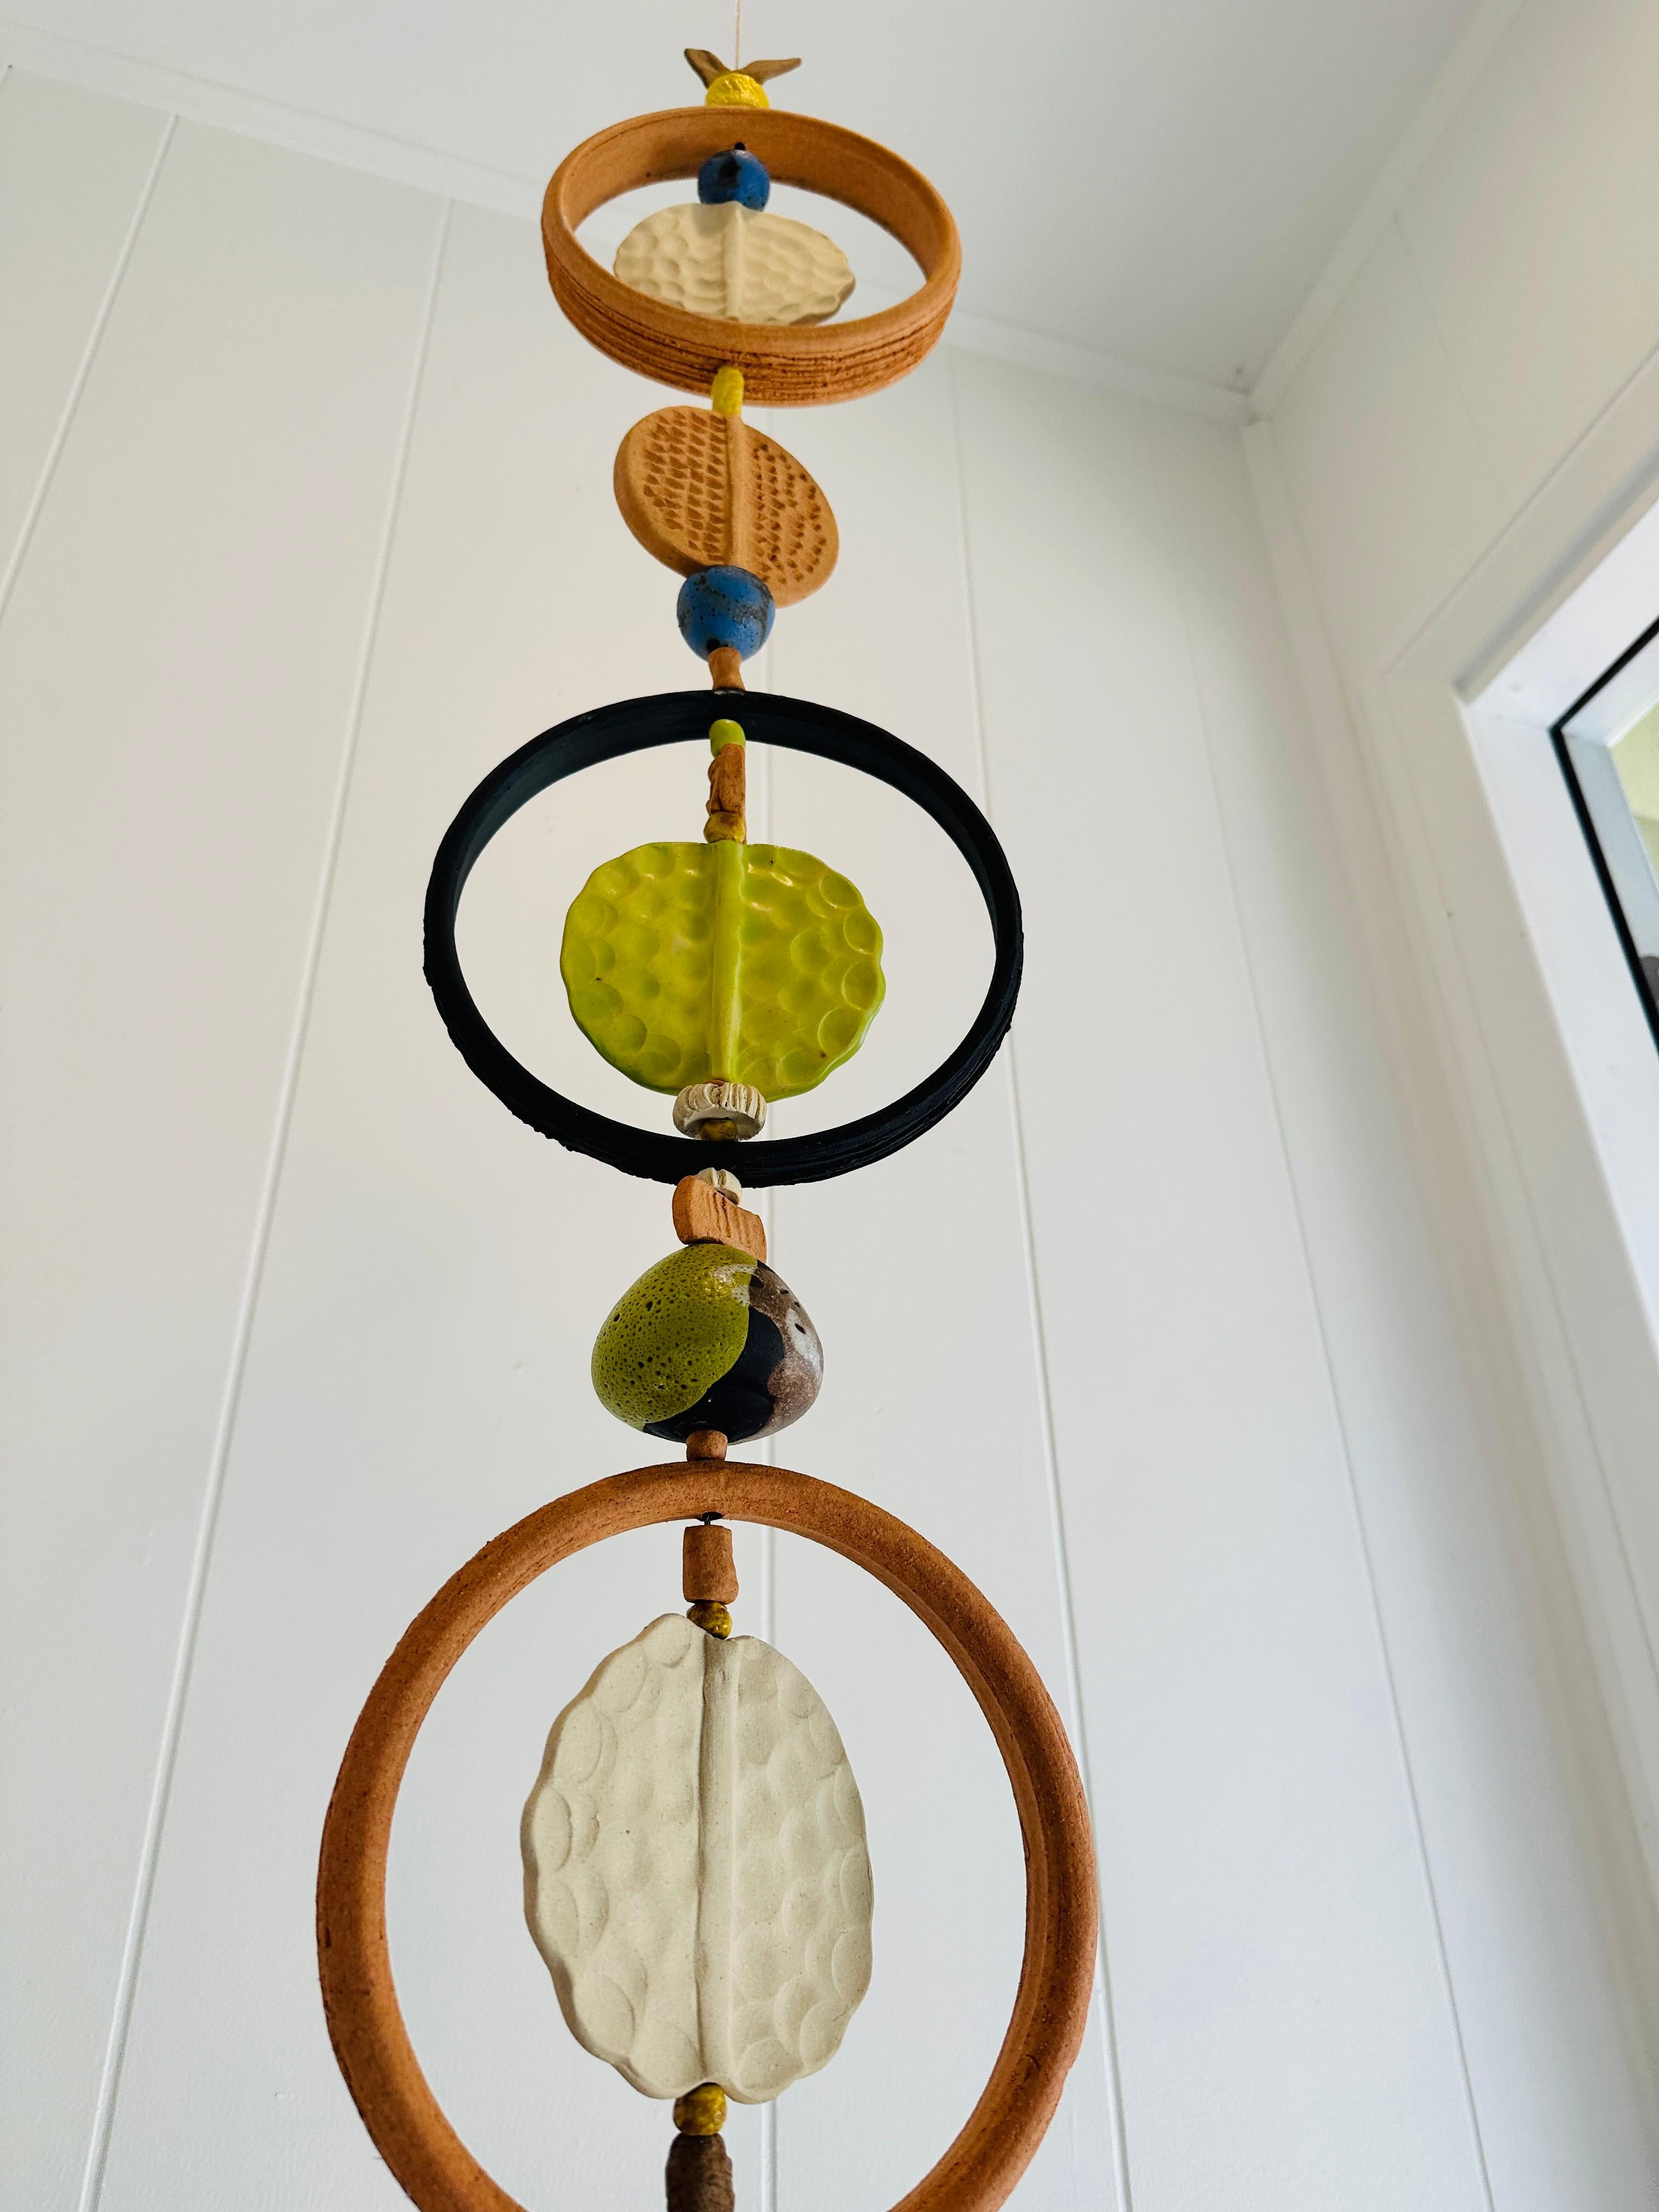 Wunderschöne modernistische architektonische hängende Keramikskulptur der amerikanischen Künstlerin Brenda Williams. Bekannt für ihre Kunstfertigkeit mit Cabat-ähnlichen Fühlern, Totems, Tieren und Skulpturen, formen Brendas einzigartige